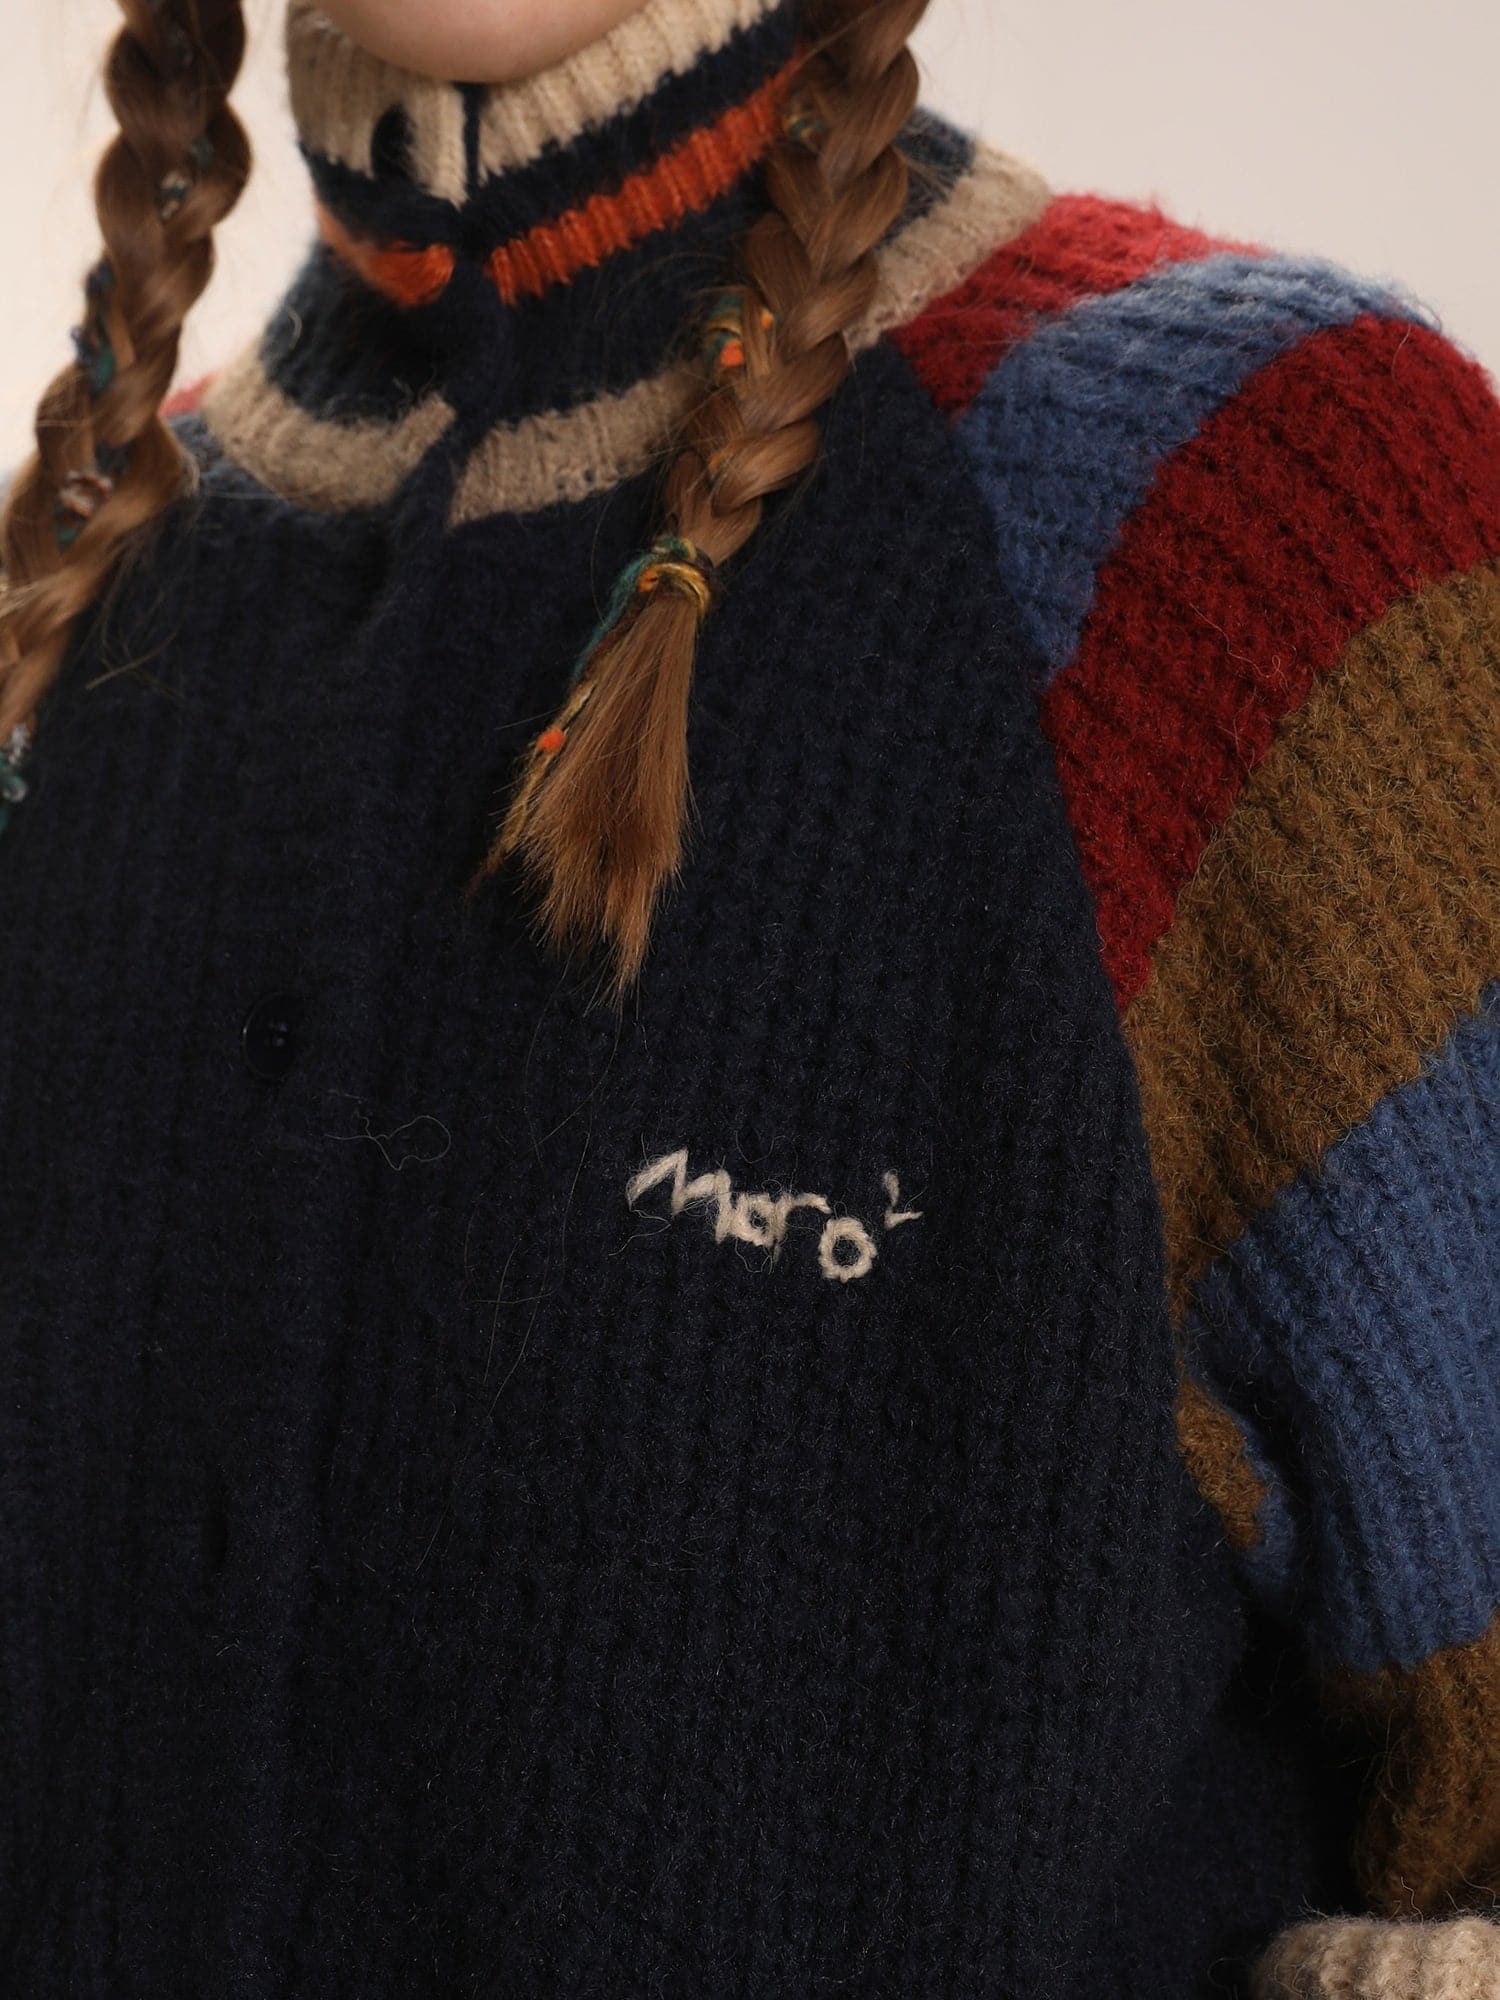 Raglan Sleeves Striped Wool Knitted Cardigan